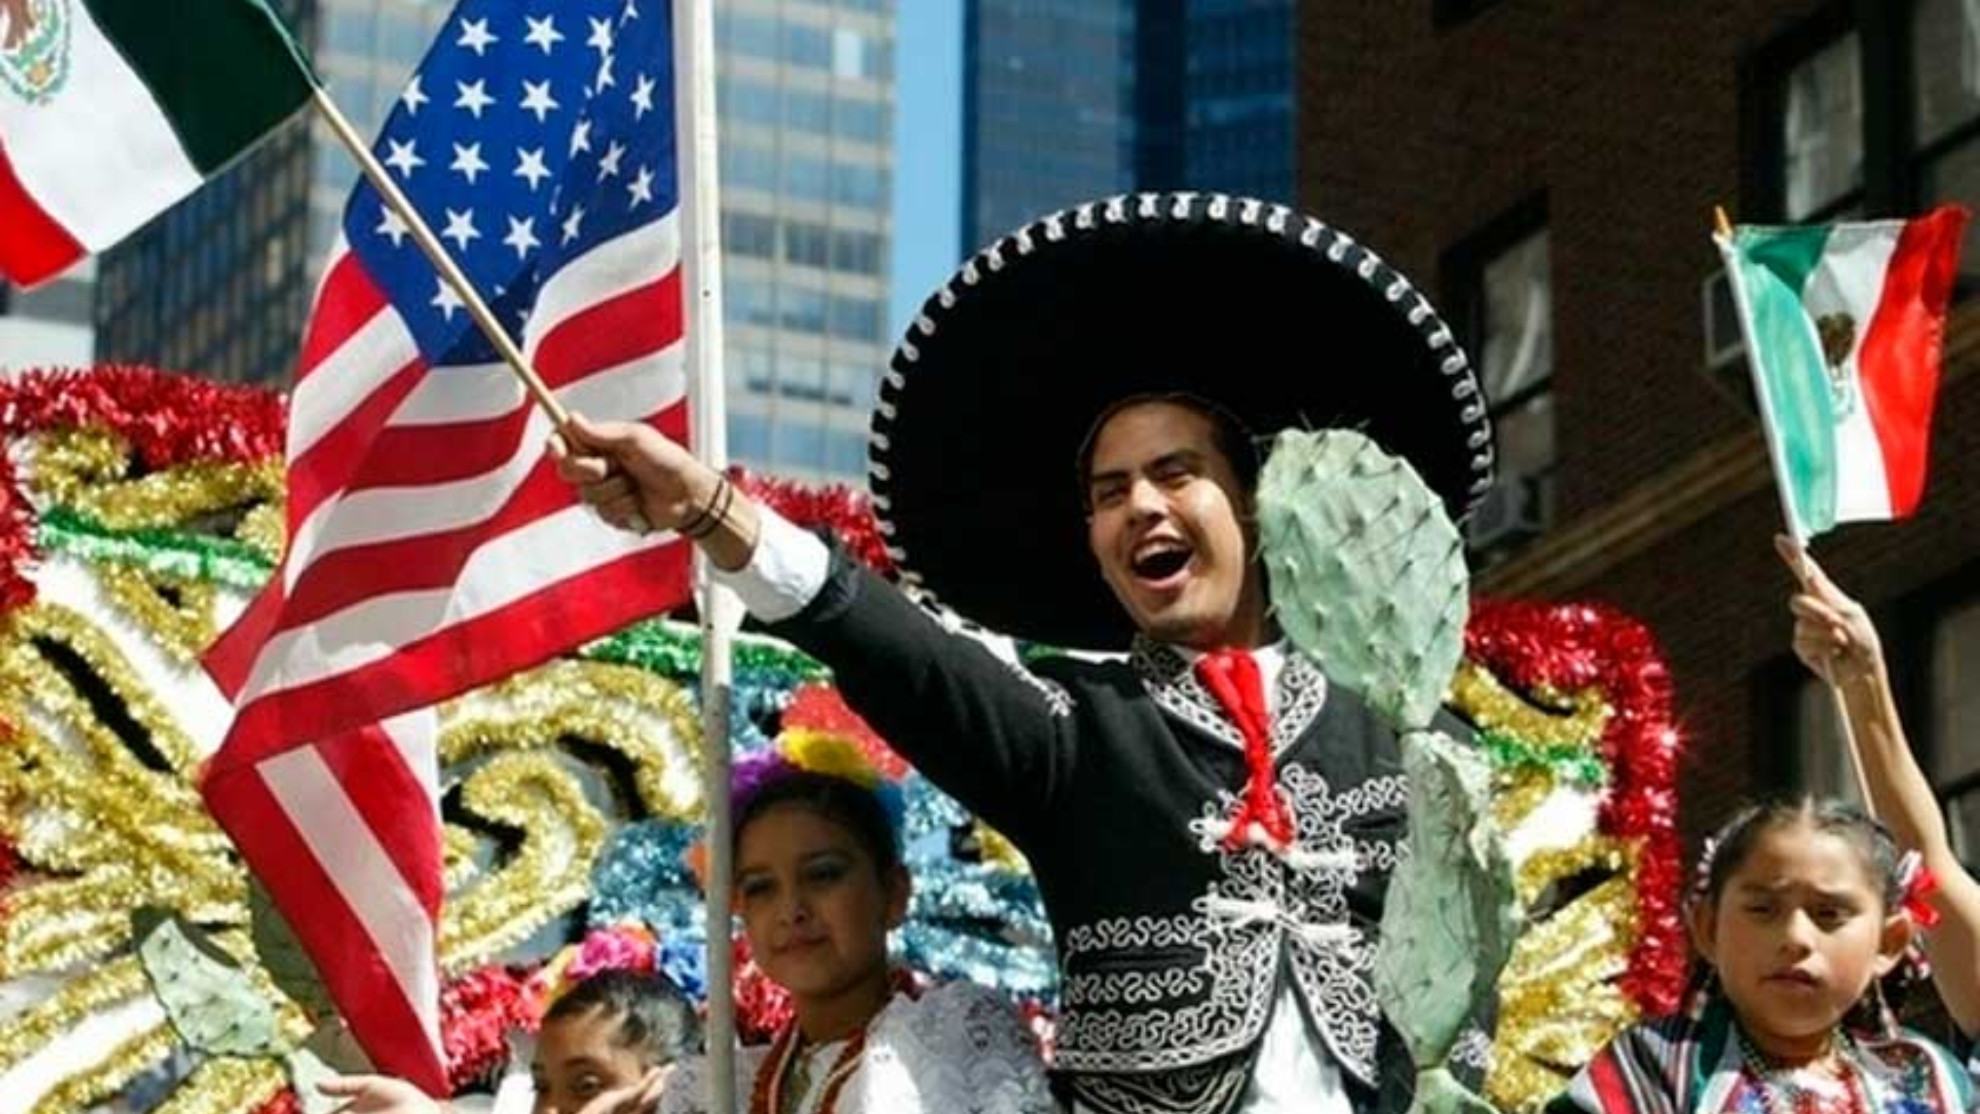 Sinceridad Actual traicionar 5 de mayo: ¿Por qué este día se celebra más en USA que en México? | Marcausa